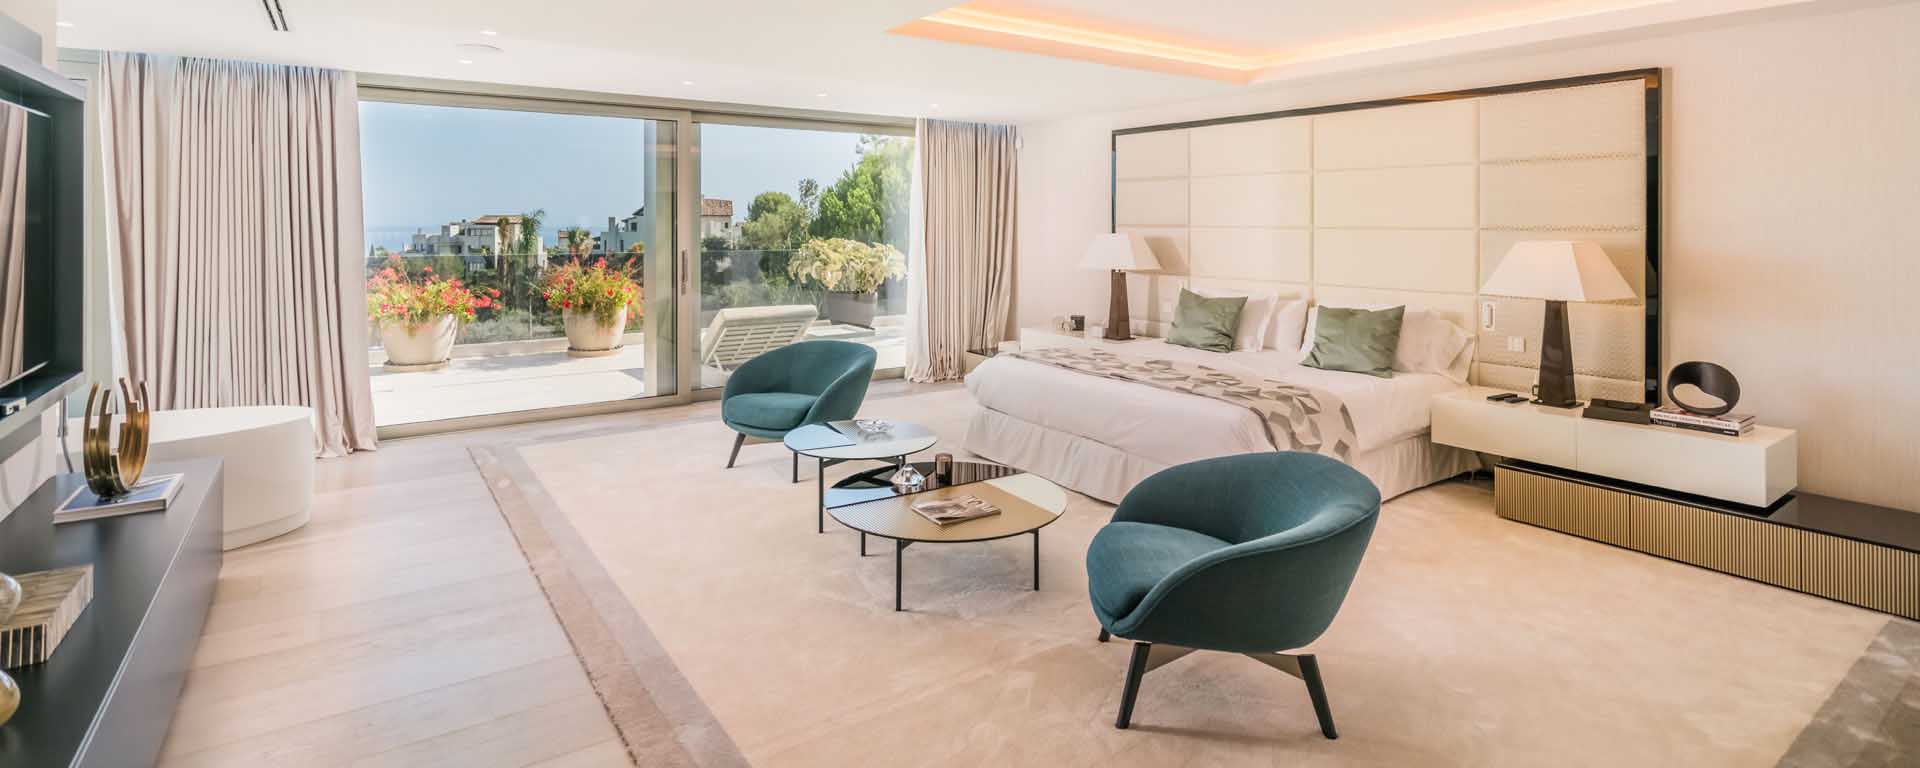 Luxus Villa Marbella Mieten - Marbella Serenity